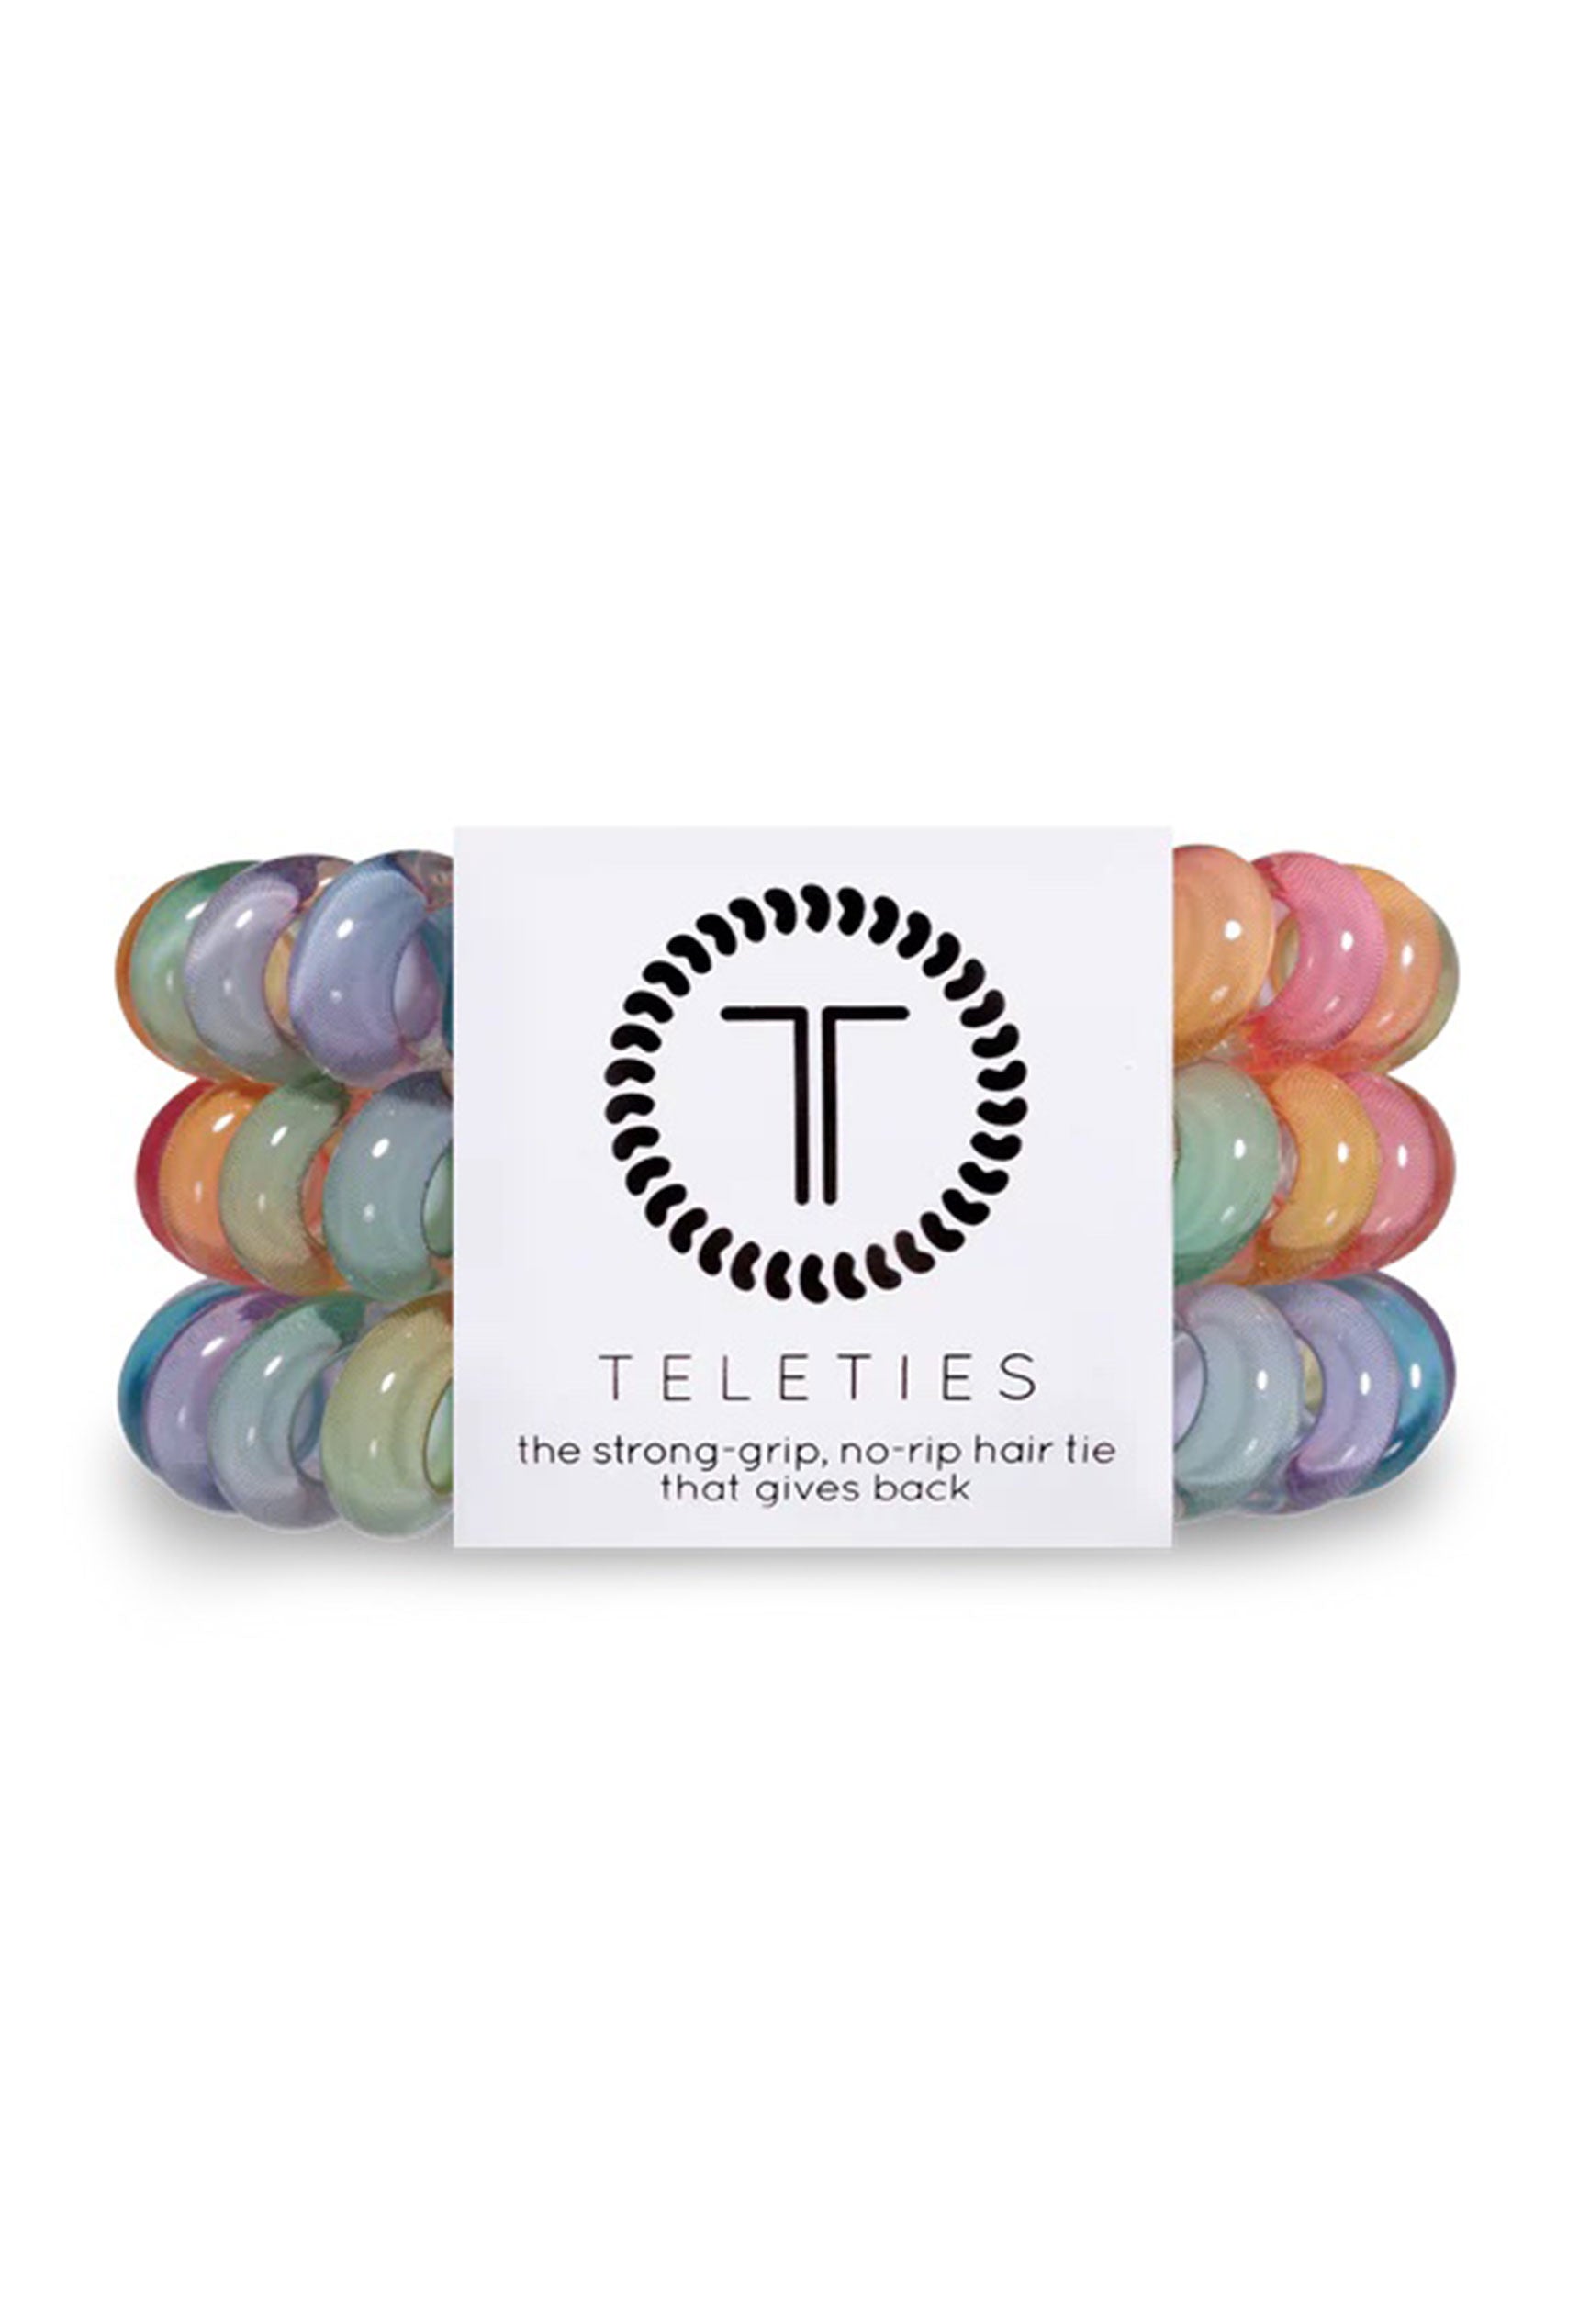 TELETIES Large Hair Ties - Rainbow Road, set of three hair ties, rainbow